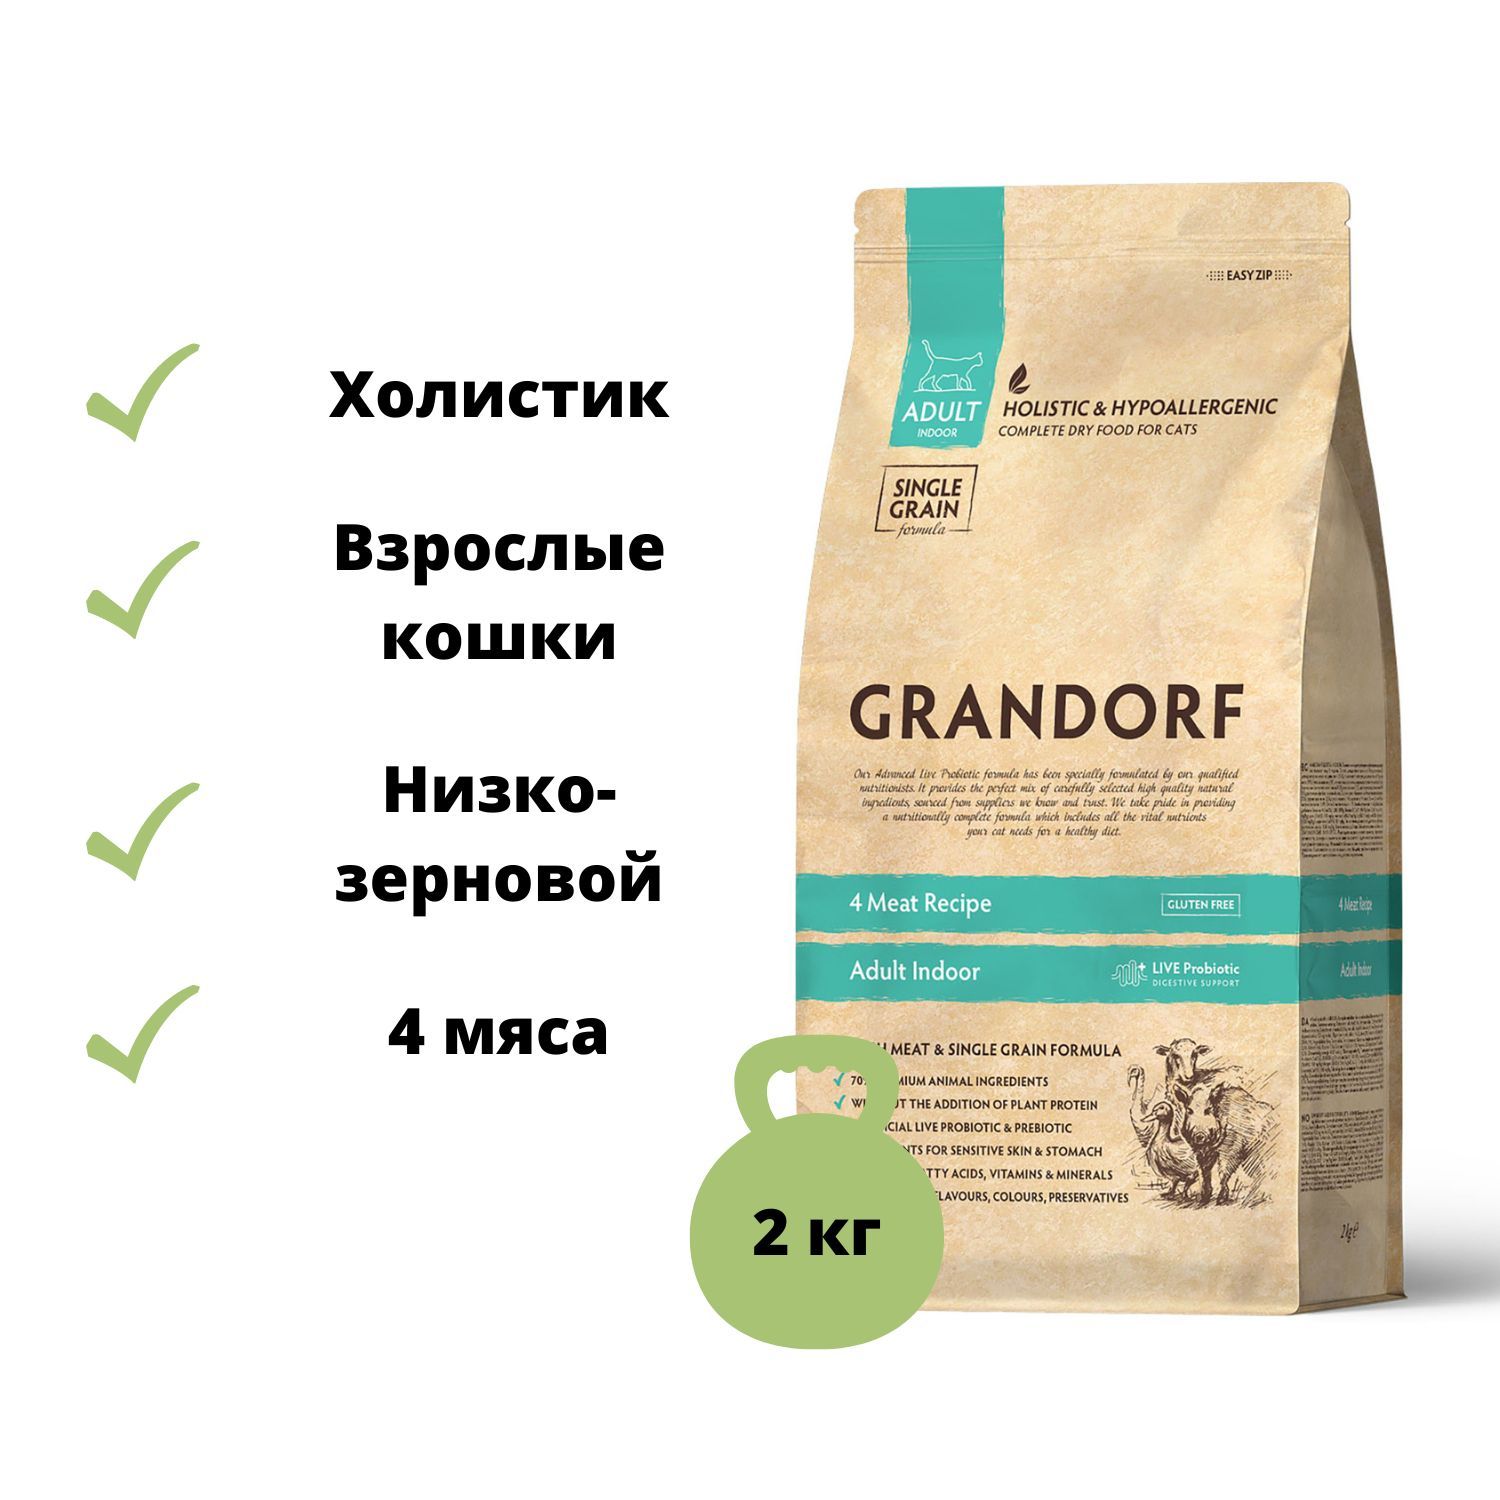 Grandorf Adult Indoor пробиотик. Грандорф логотип. Грандорф для чувствительного пищеварения для кошек 4 типа мясо.